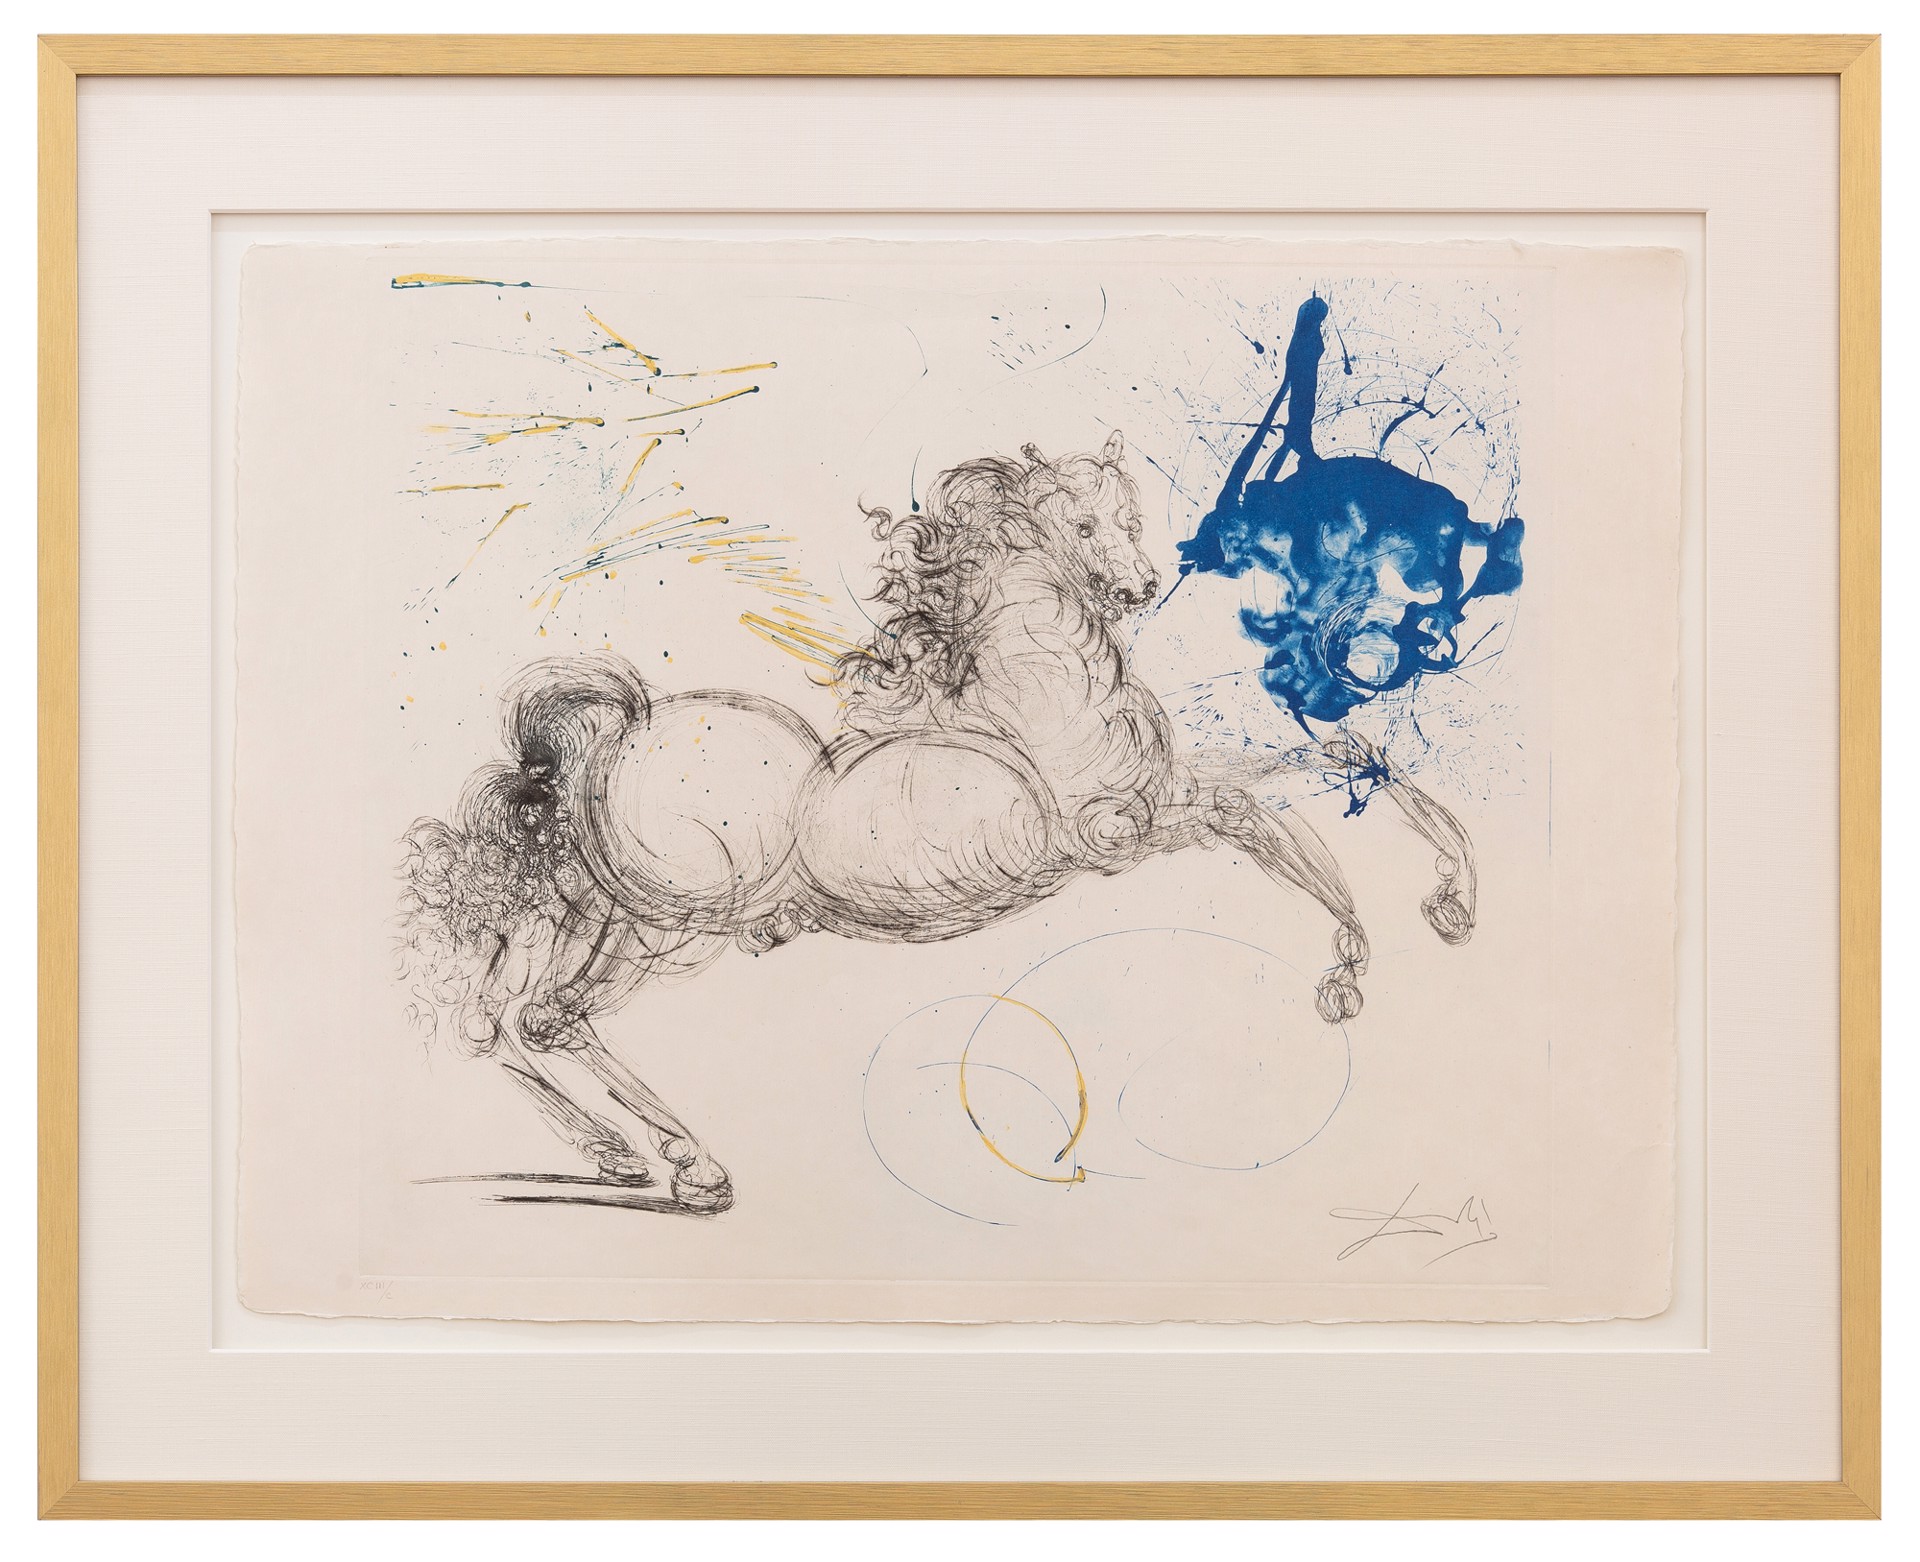 Mythology "Pegasus" by Salvador Dalí